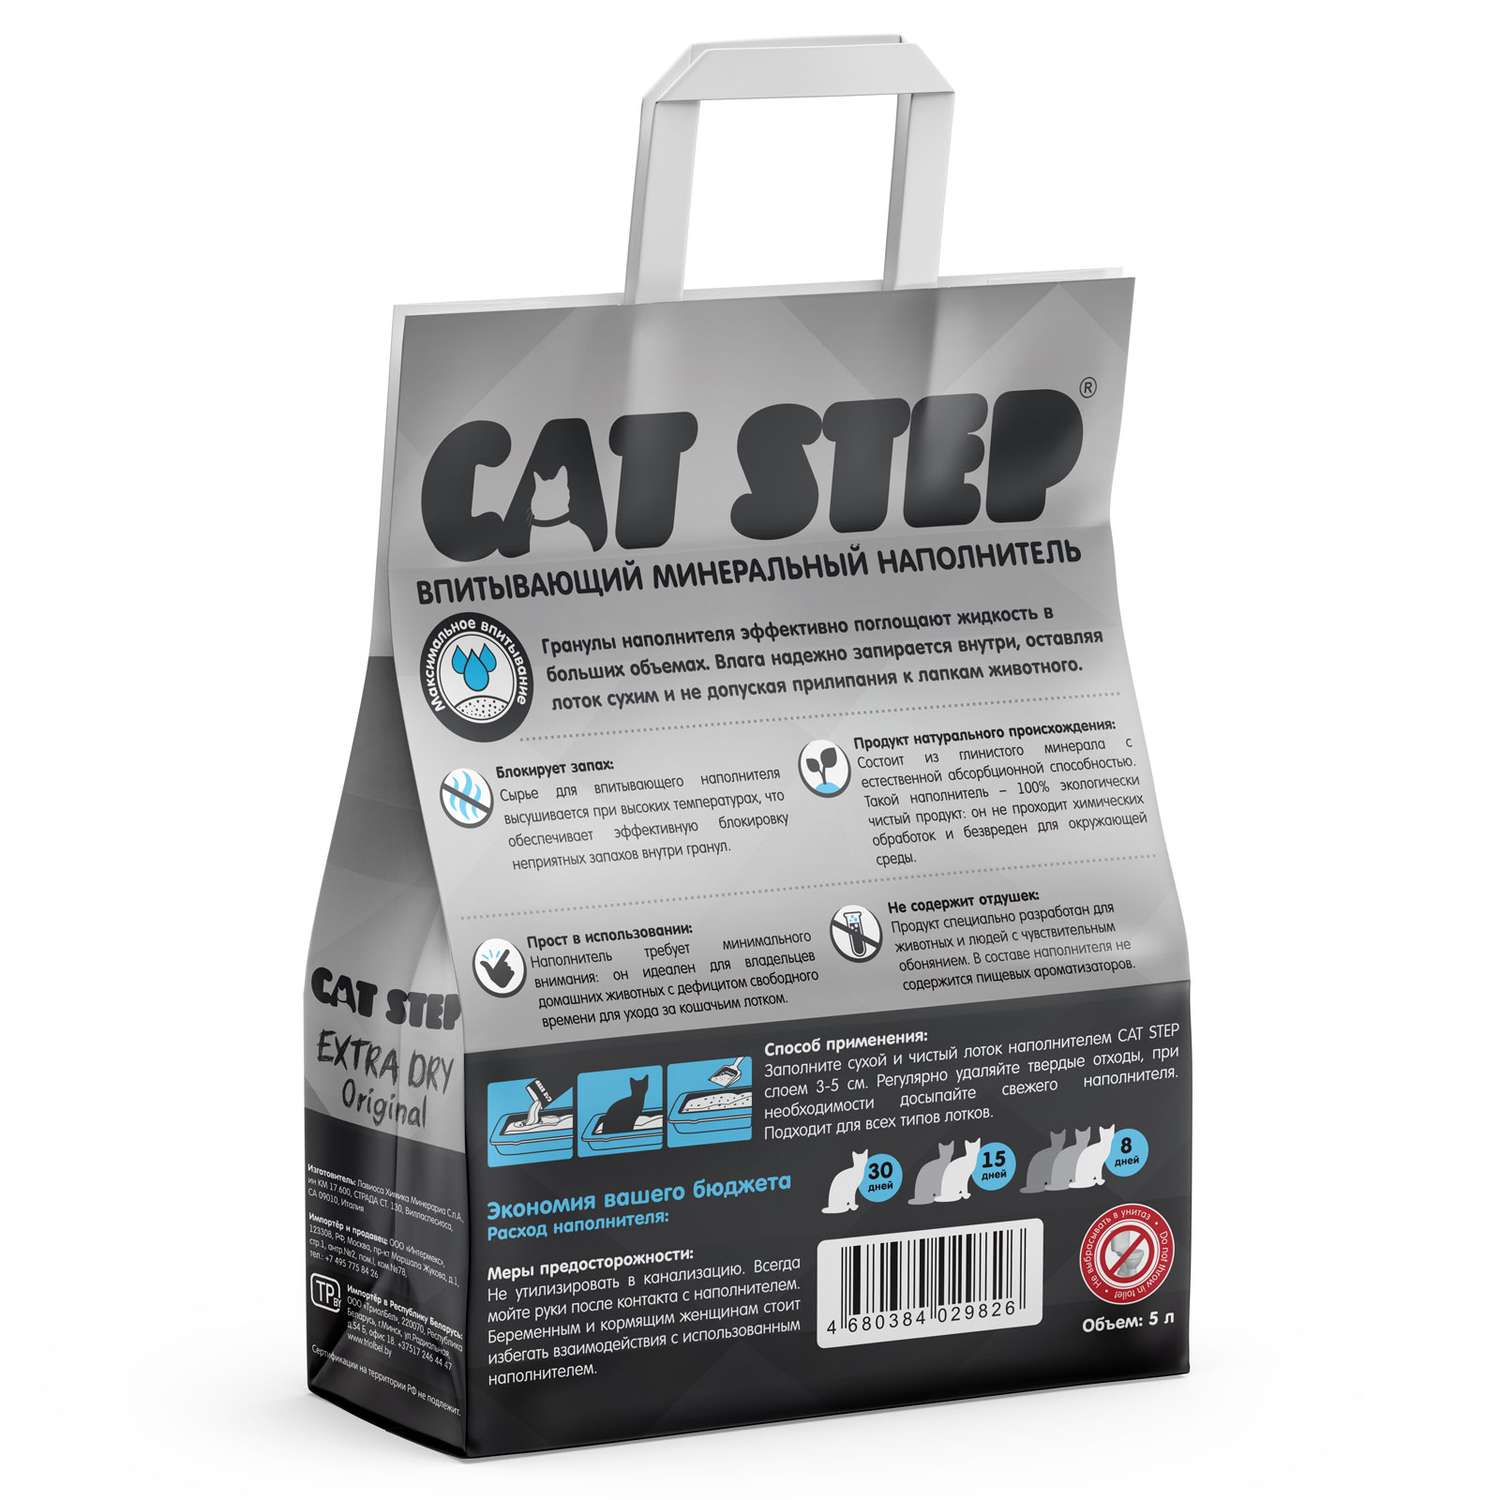 Наполнитель для кошачьего туалета Cat Step Extra Dry Original впитывающий минеральный 5л - фото 2